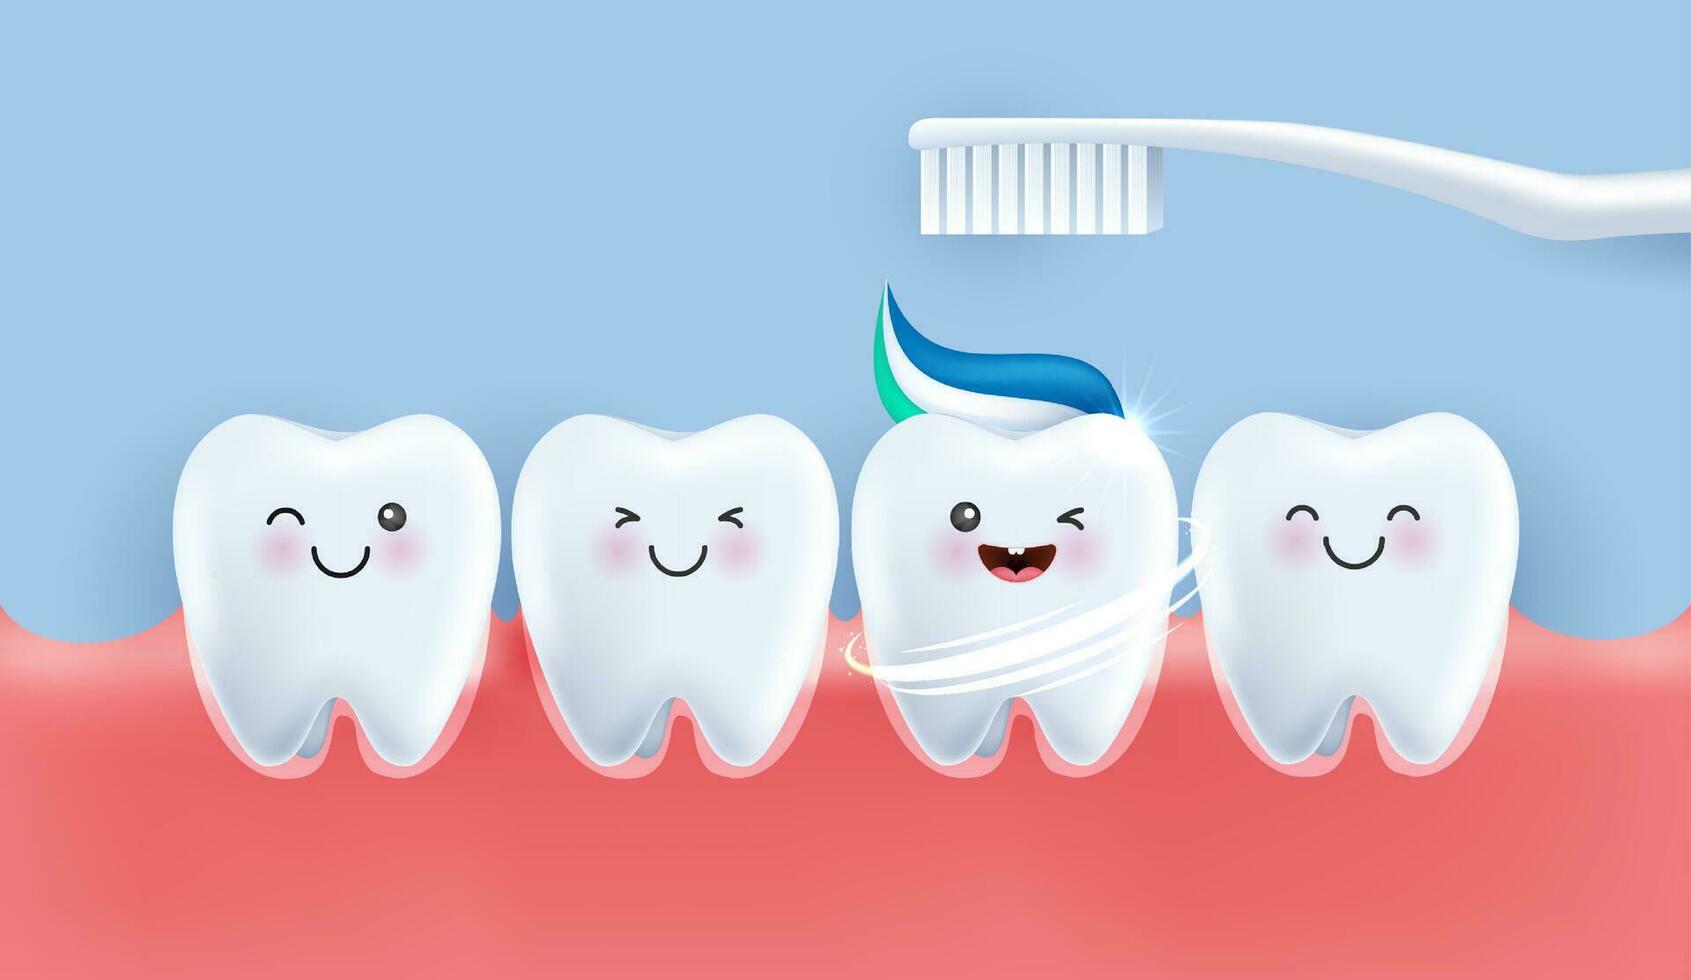 les dents est content brosse votre les dents avec dentifrice. les dents adapté pour les enfants dentaire clinique. les dents personnage pour enfants. mignonne dentiste mascotte pour médical applications, sites Internet et hôpital. vecteur conception.